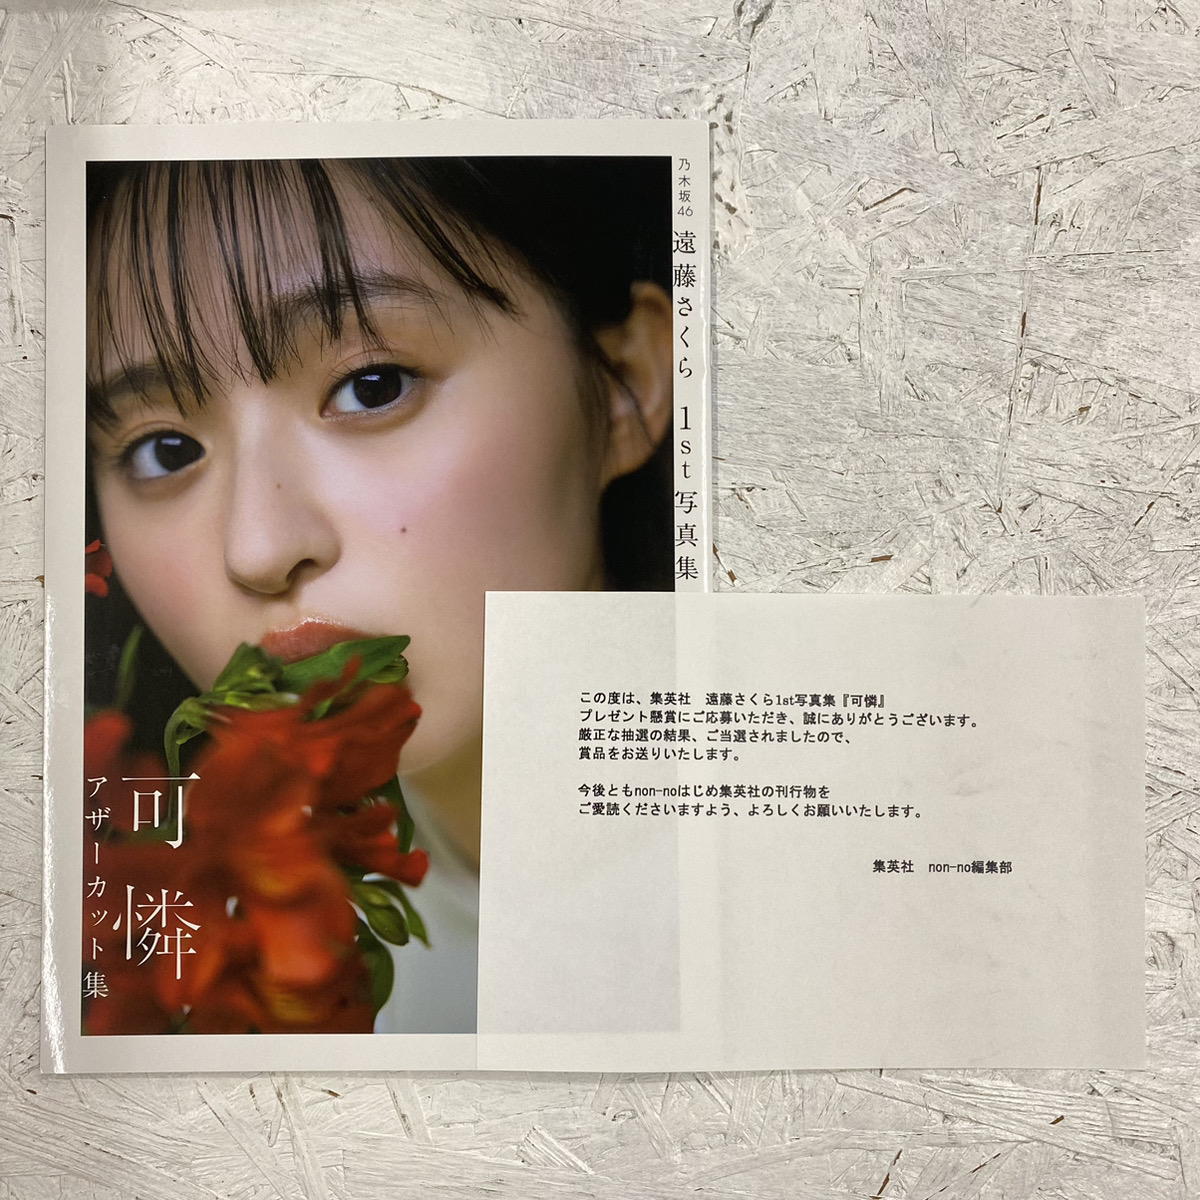 乃木坂46 遠藤さくら「可憐」アザーカット写真集 - アイドルグッズ買取